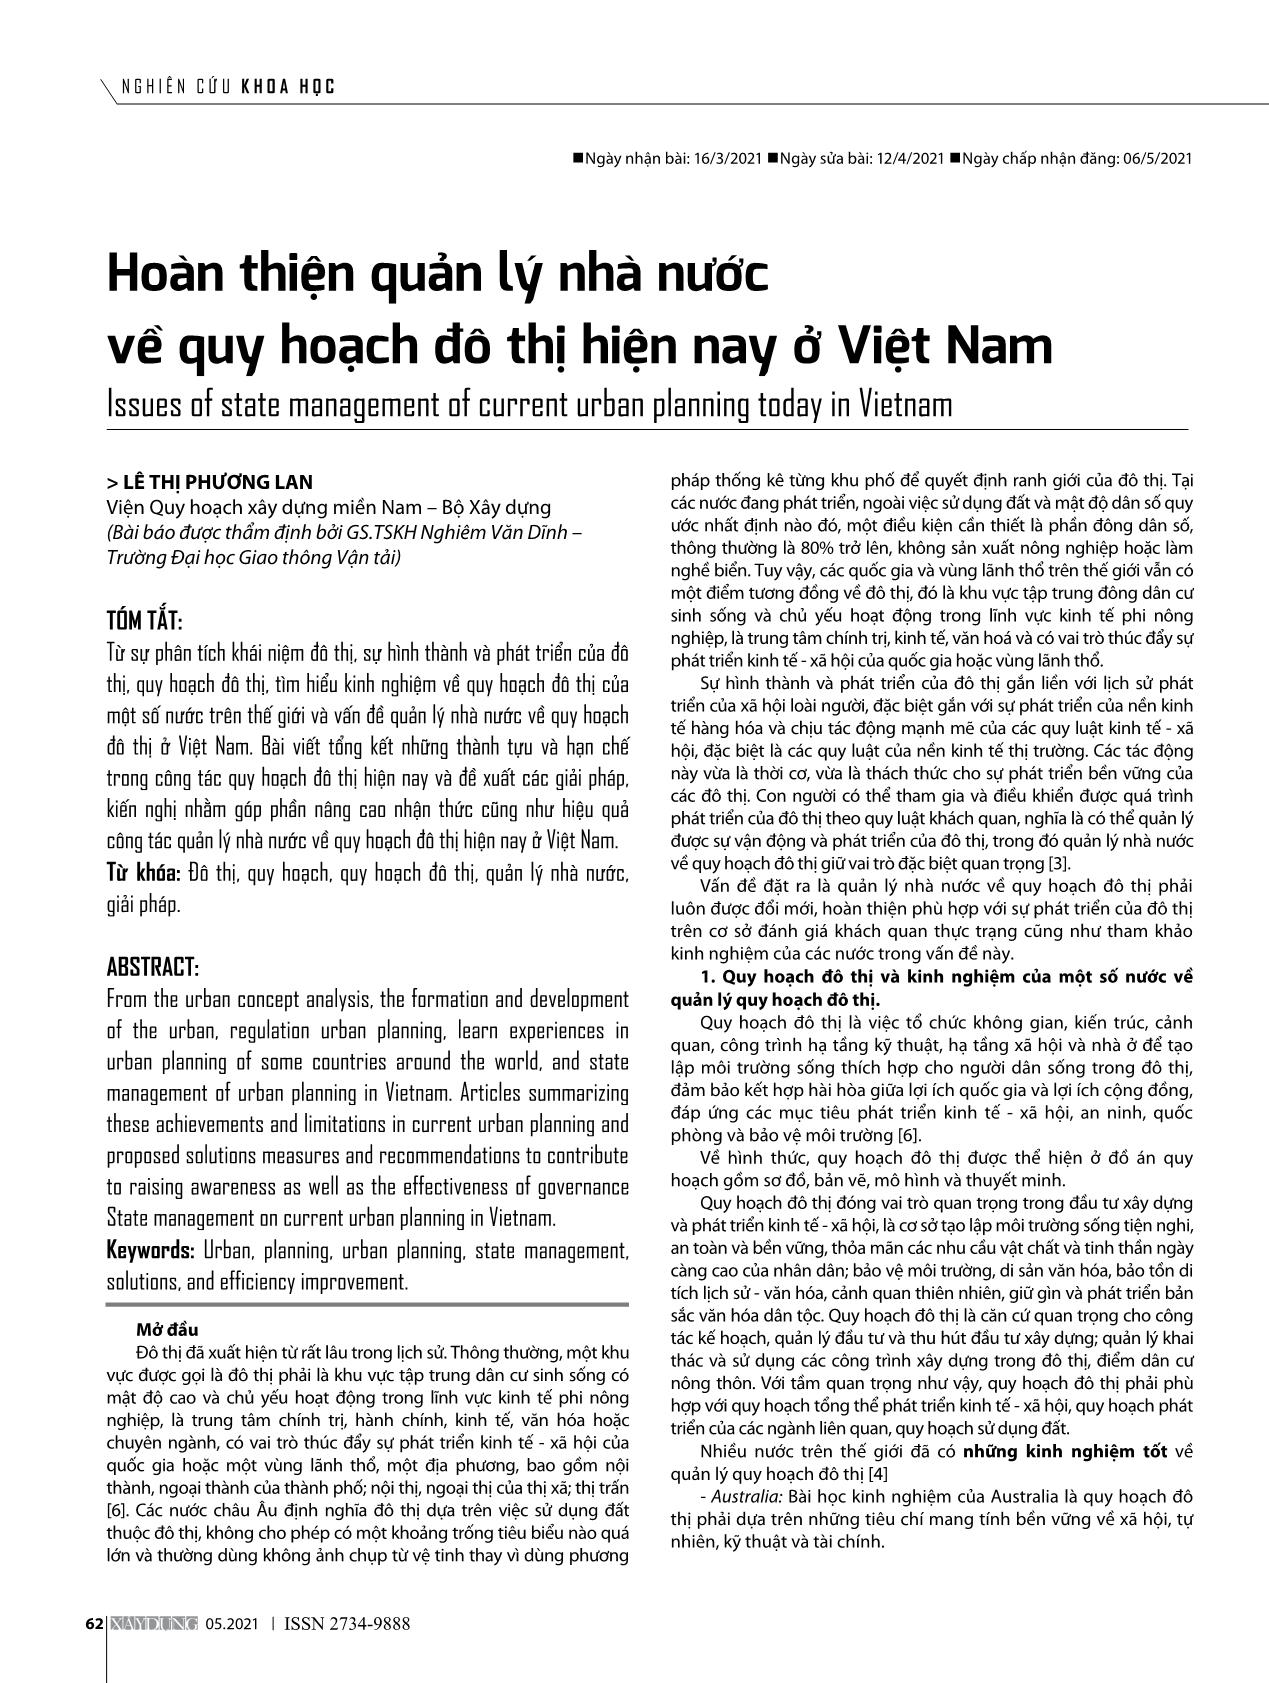 Hoàn thiện quản lý nhà nước về quy hoạch đô thị hiện nay ở Việt Nam trang 1